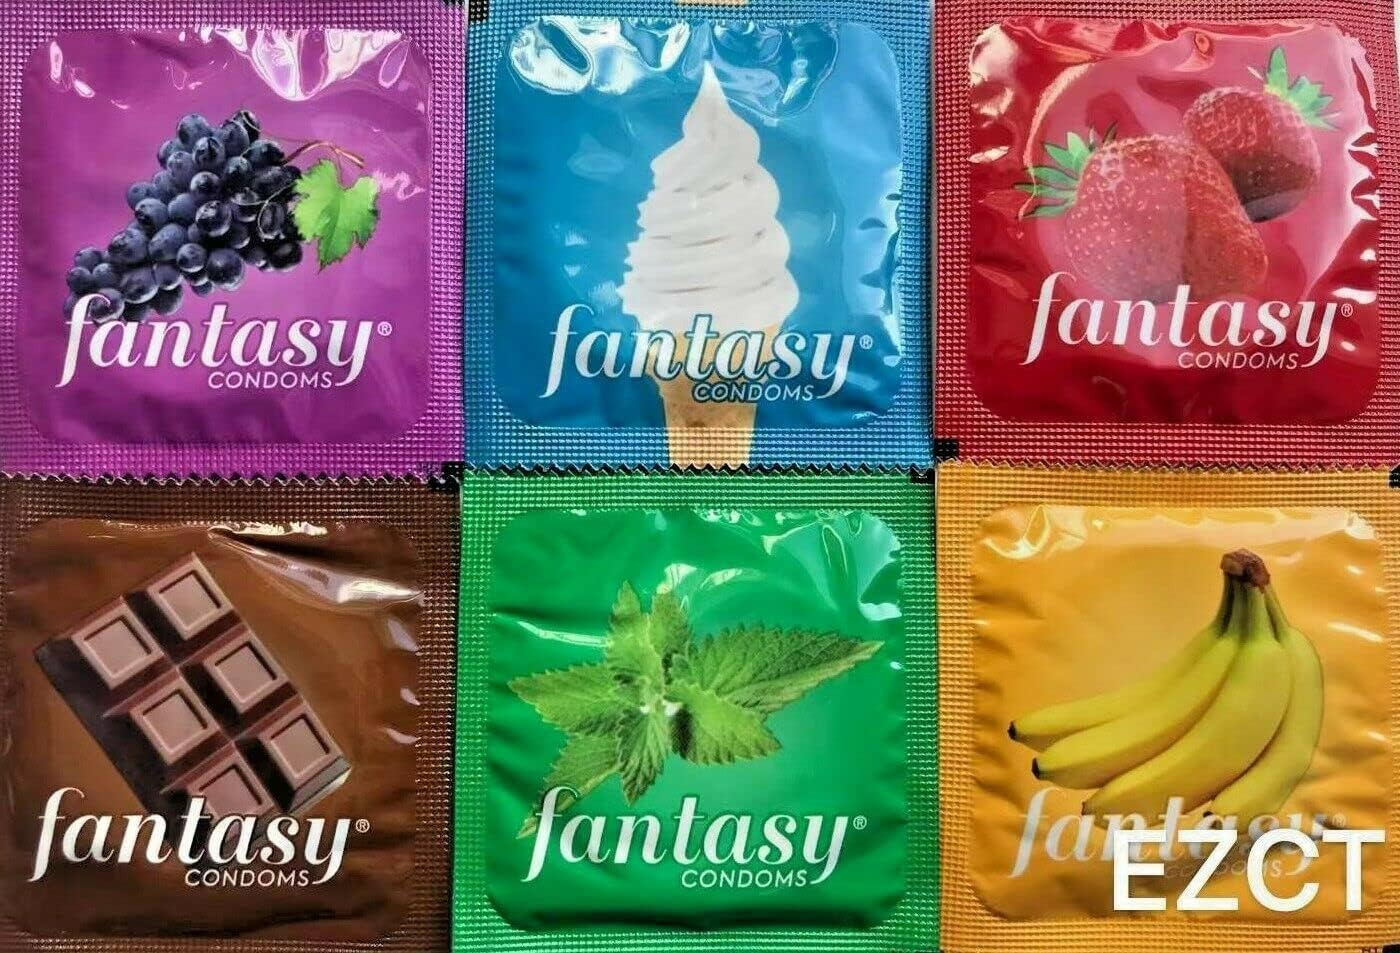 Paquete de 48 condones con sabor a fantasía: variedad de sabores como vainilla, 